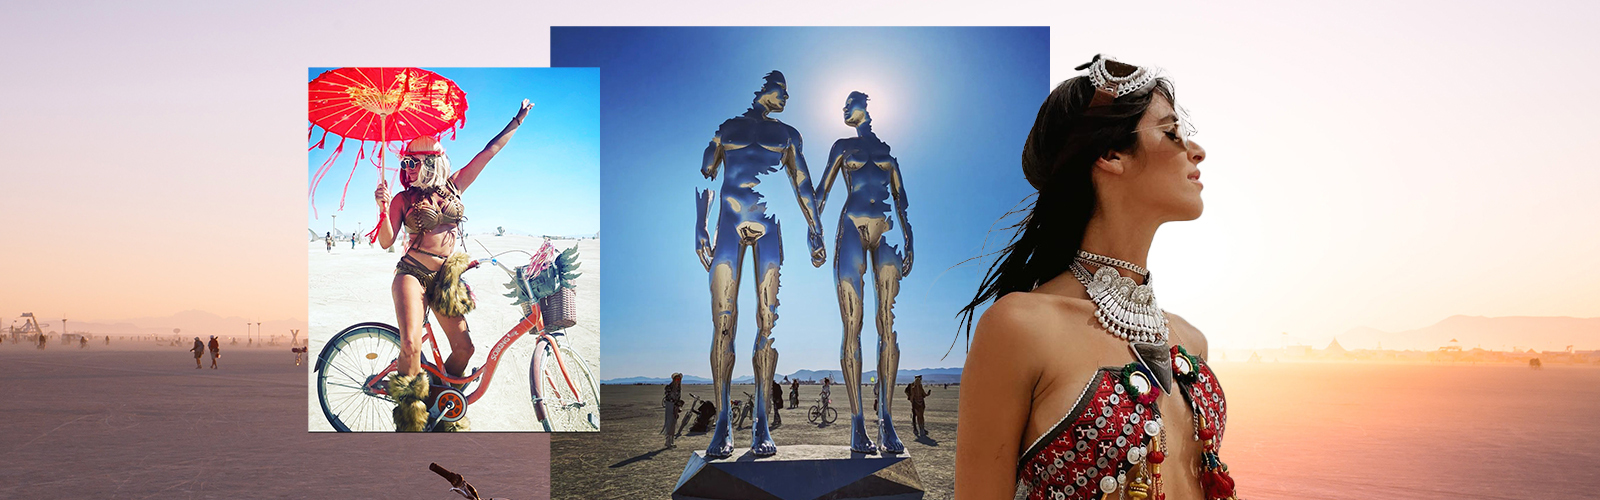 Burning Man 50